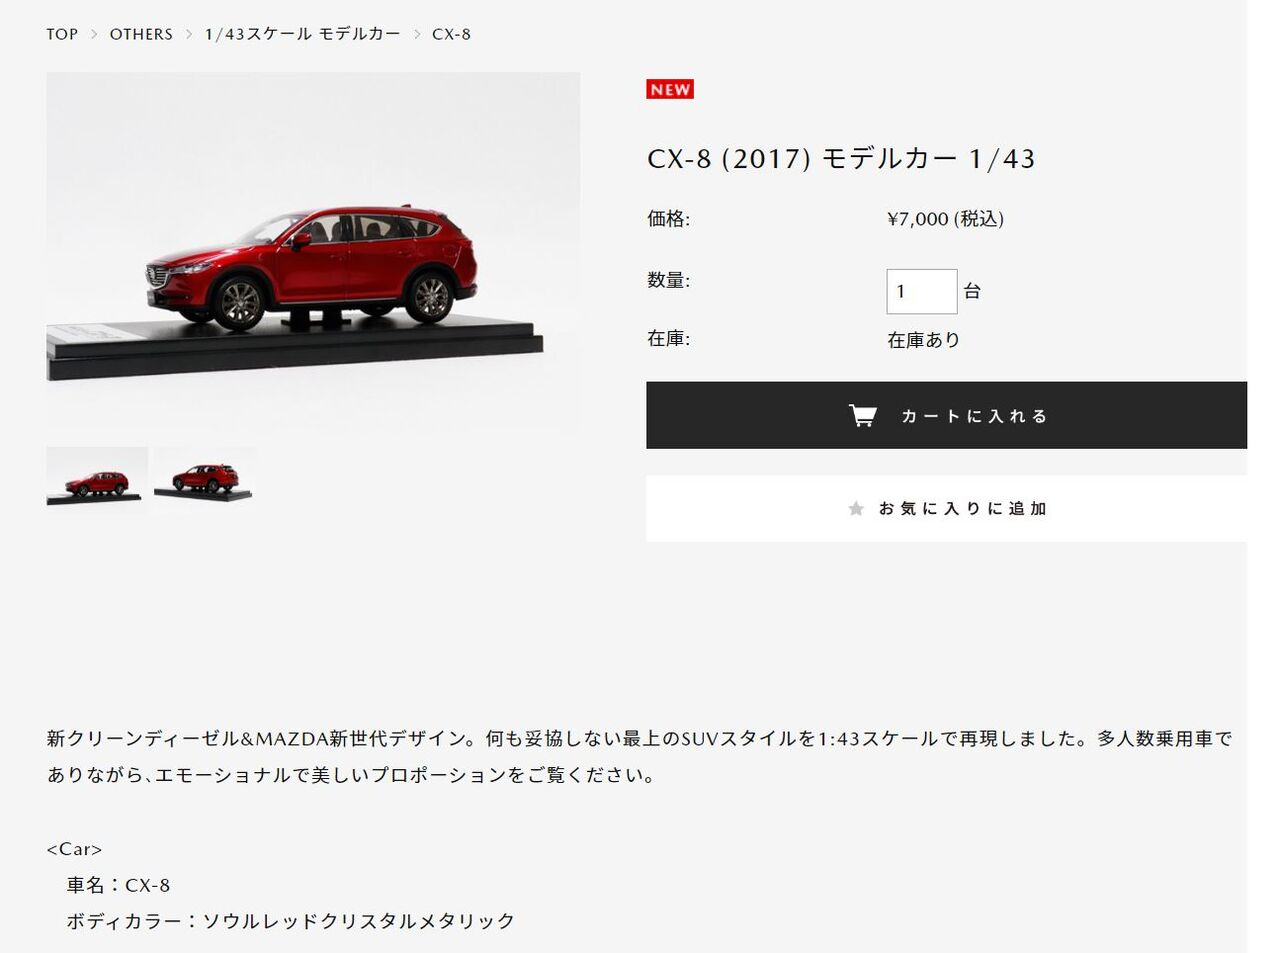 マツダ公式グッズショップでモデルカー「MAZDA CX-8 1/43」が発売開始 